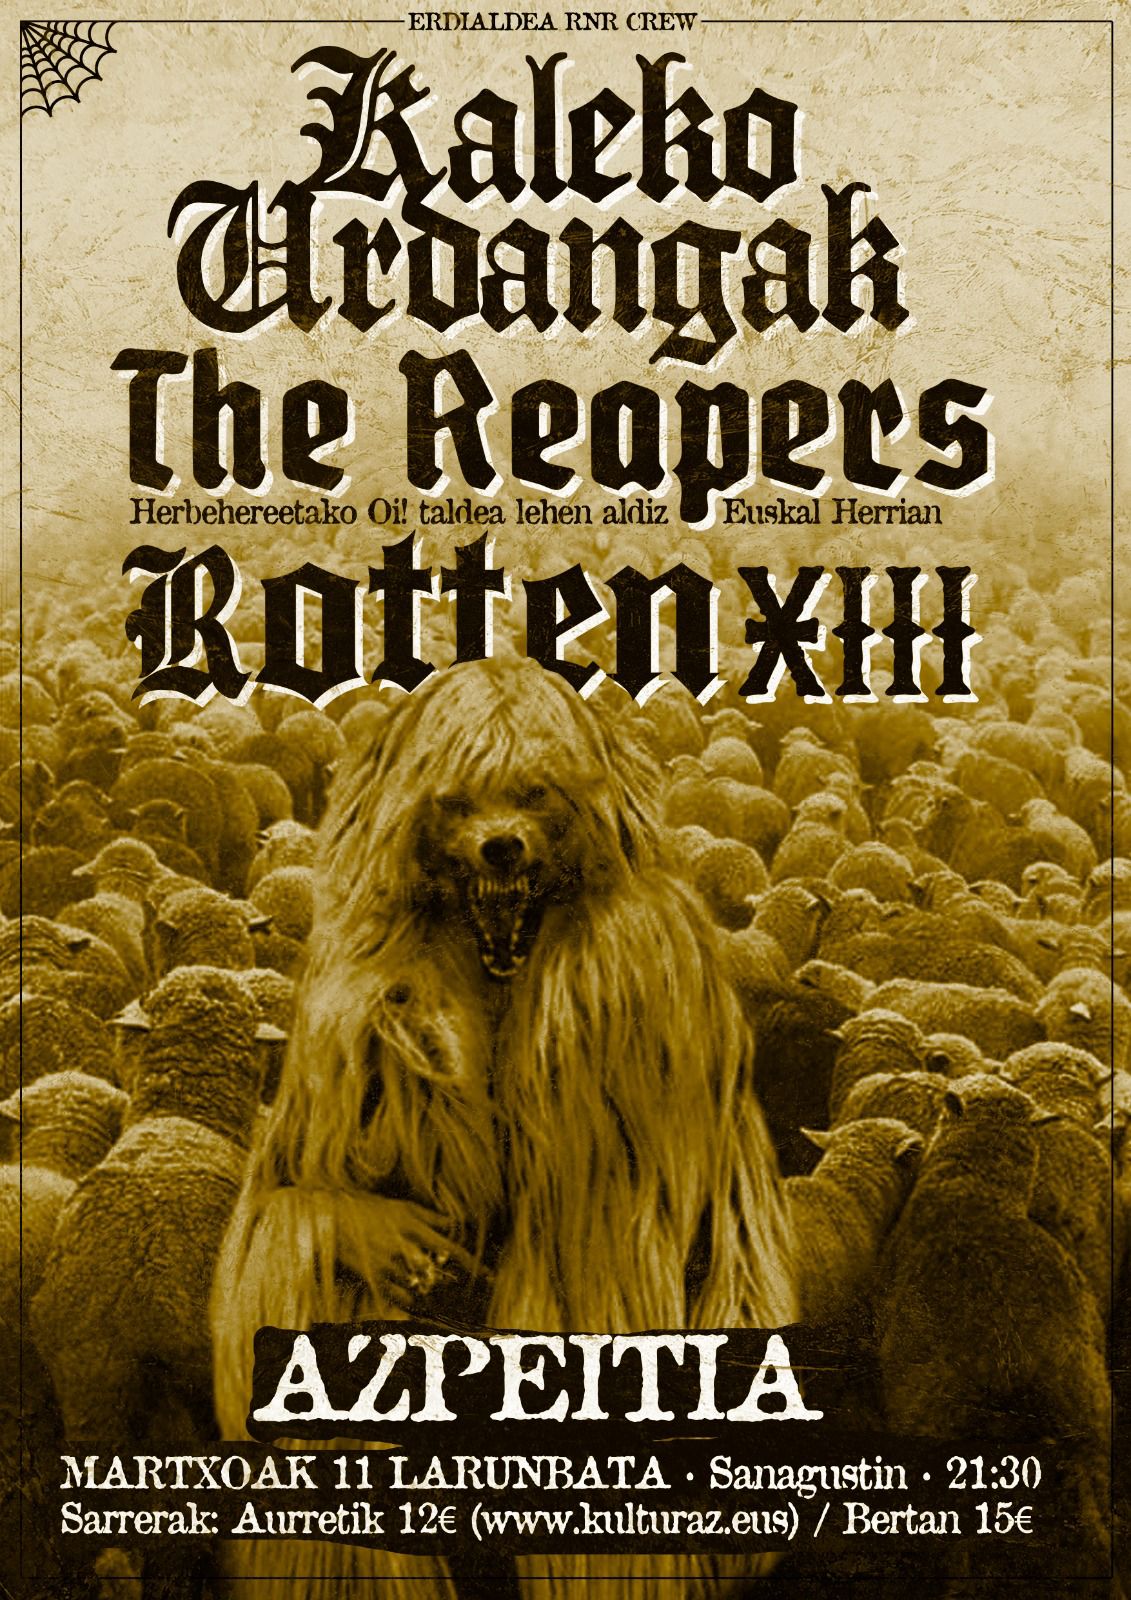 KALEKO URDANGAK + THE REAPERS + ROTTEN XIII